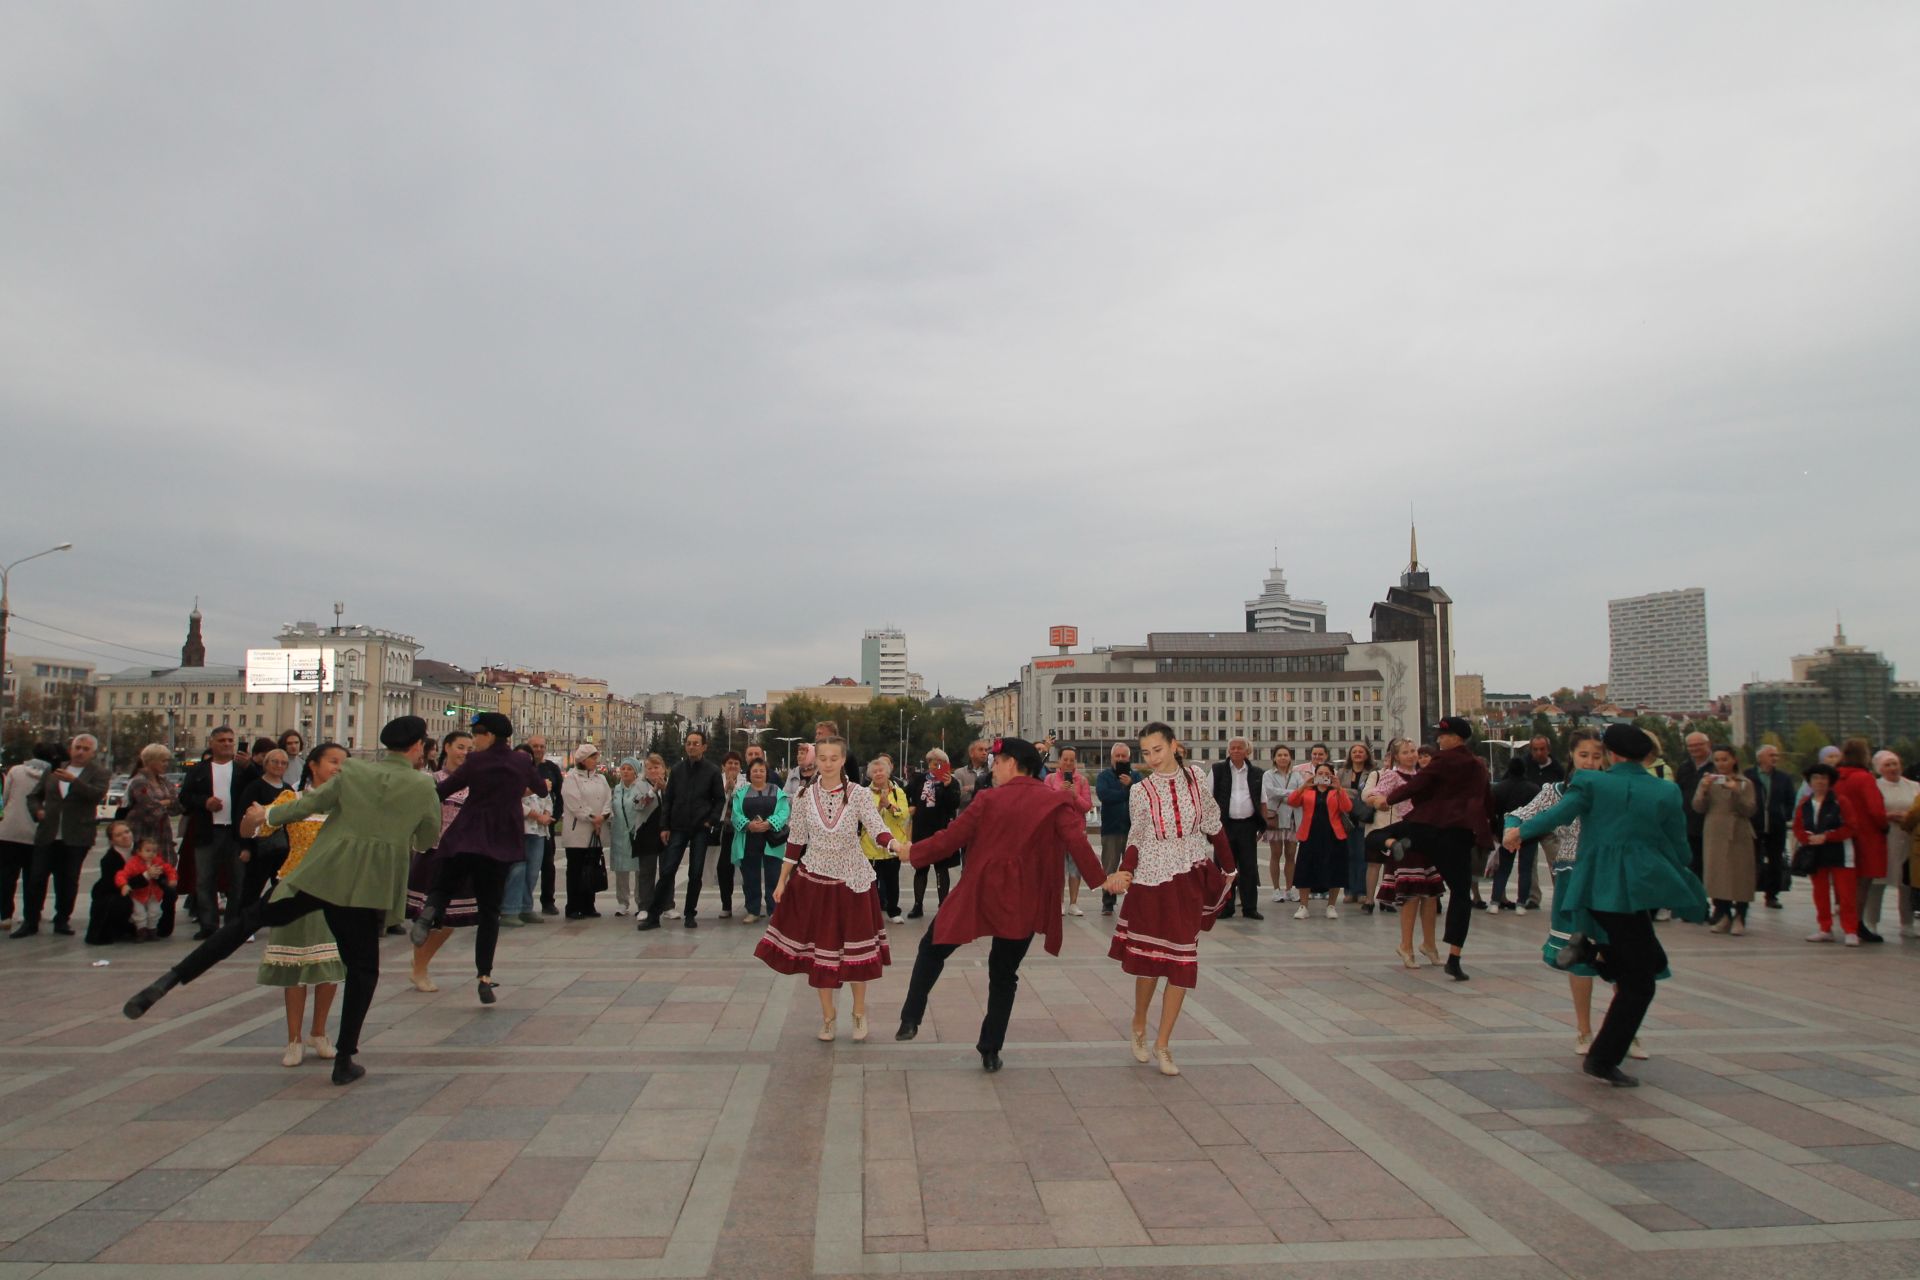 Фото репортаж с места проведения проекта "Культурная столица Республики Татарстан".